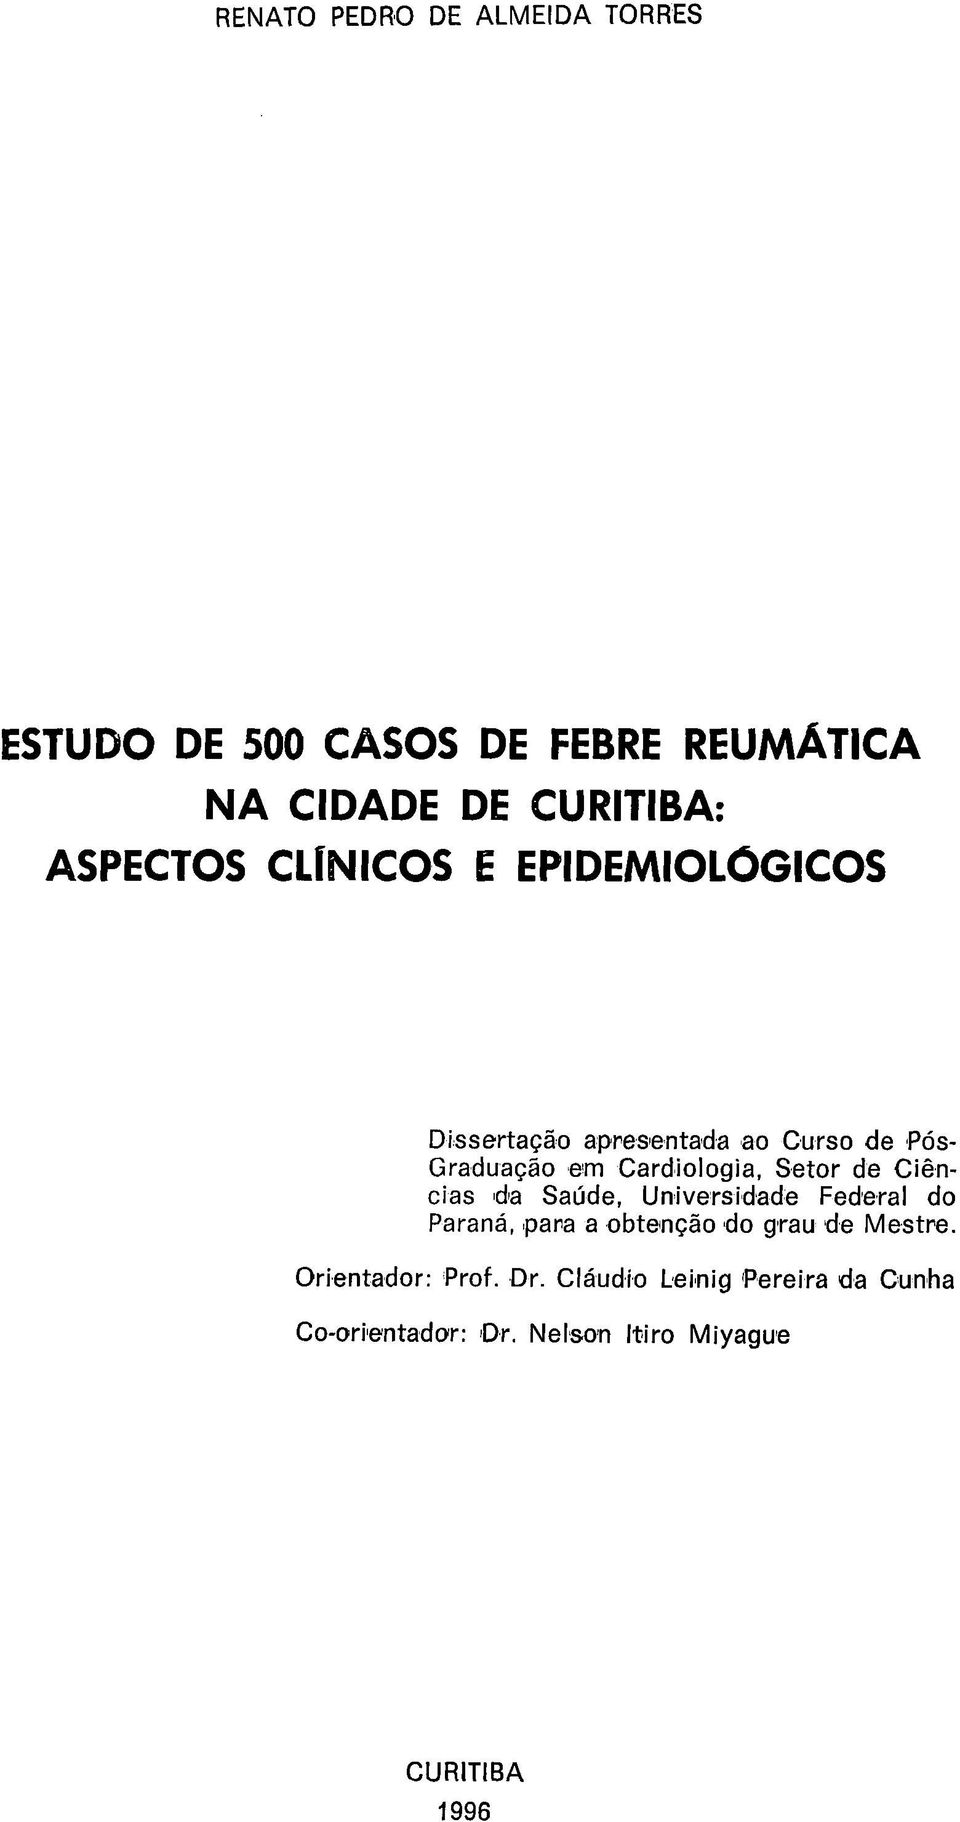 Cardiologia, Setor de Ciências da Saúde, Universidade Federal do Paraná, para a obtenção do grau de